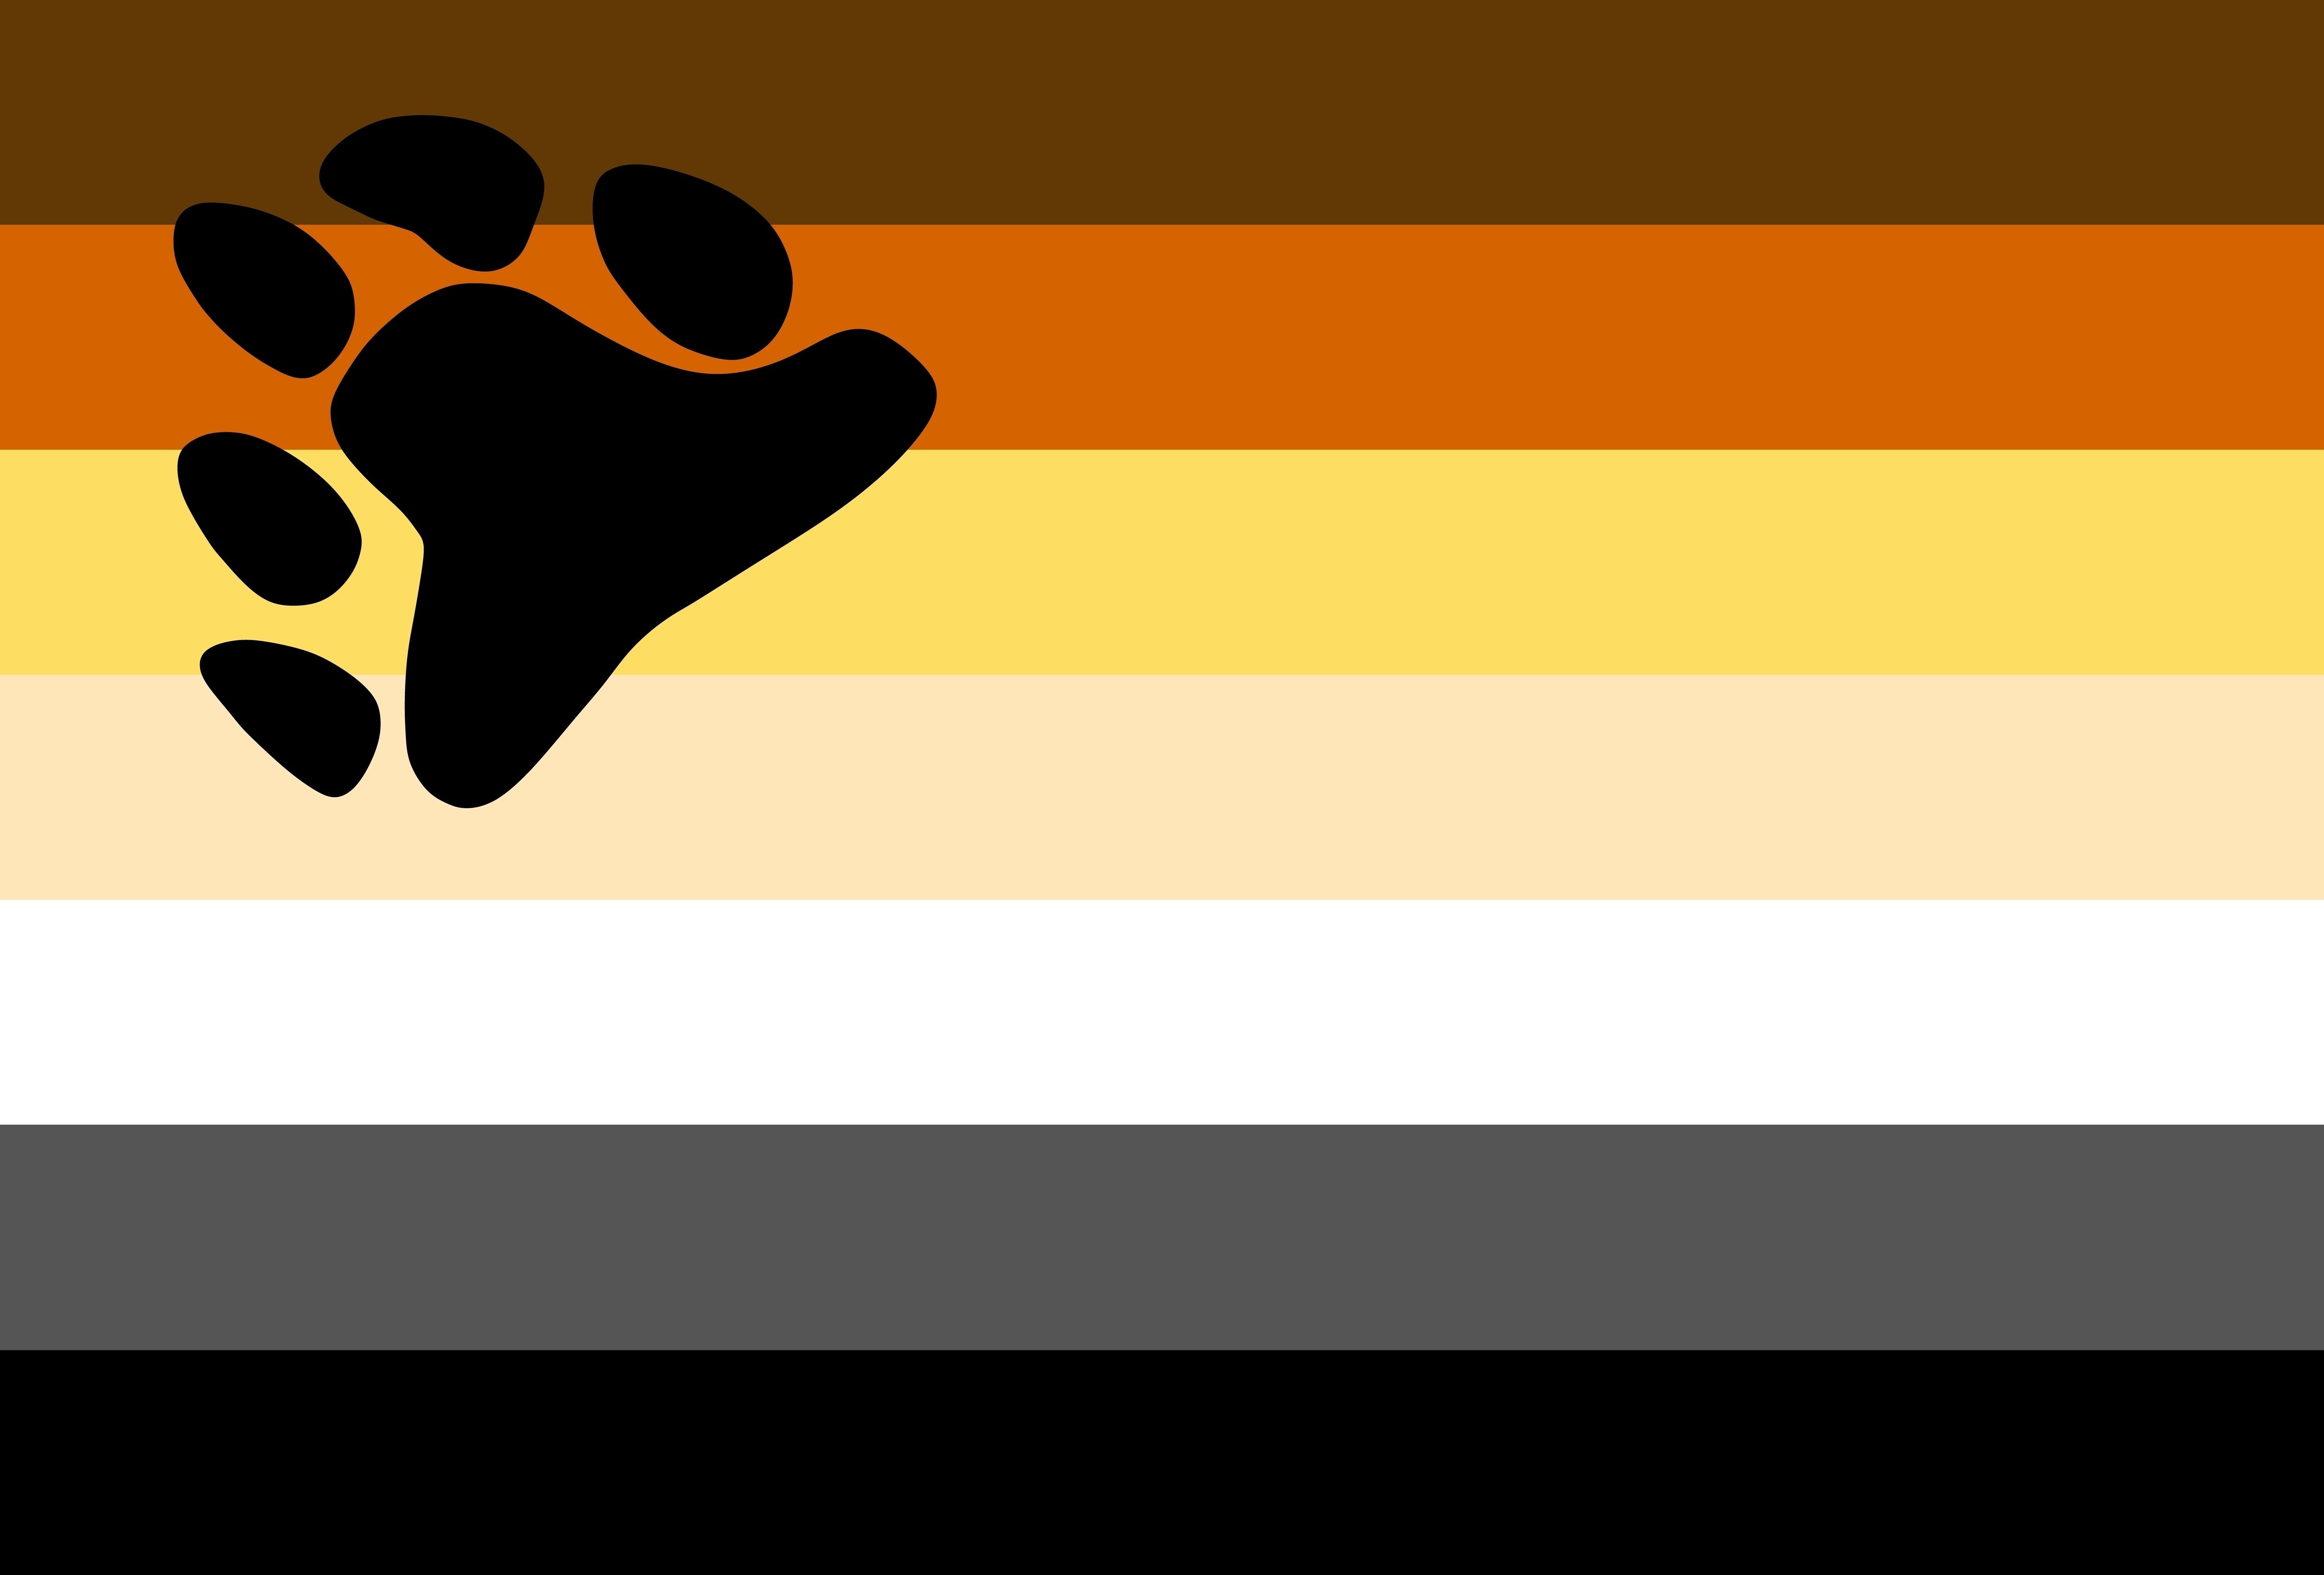 Você sabe reconhecer todas as bandeiras da comunidade LGBTQIAP+?